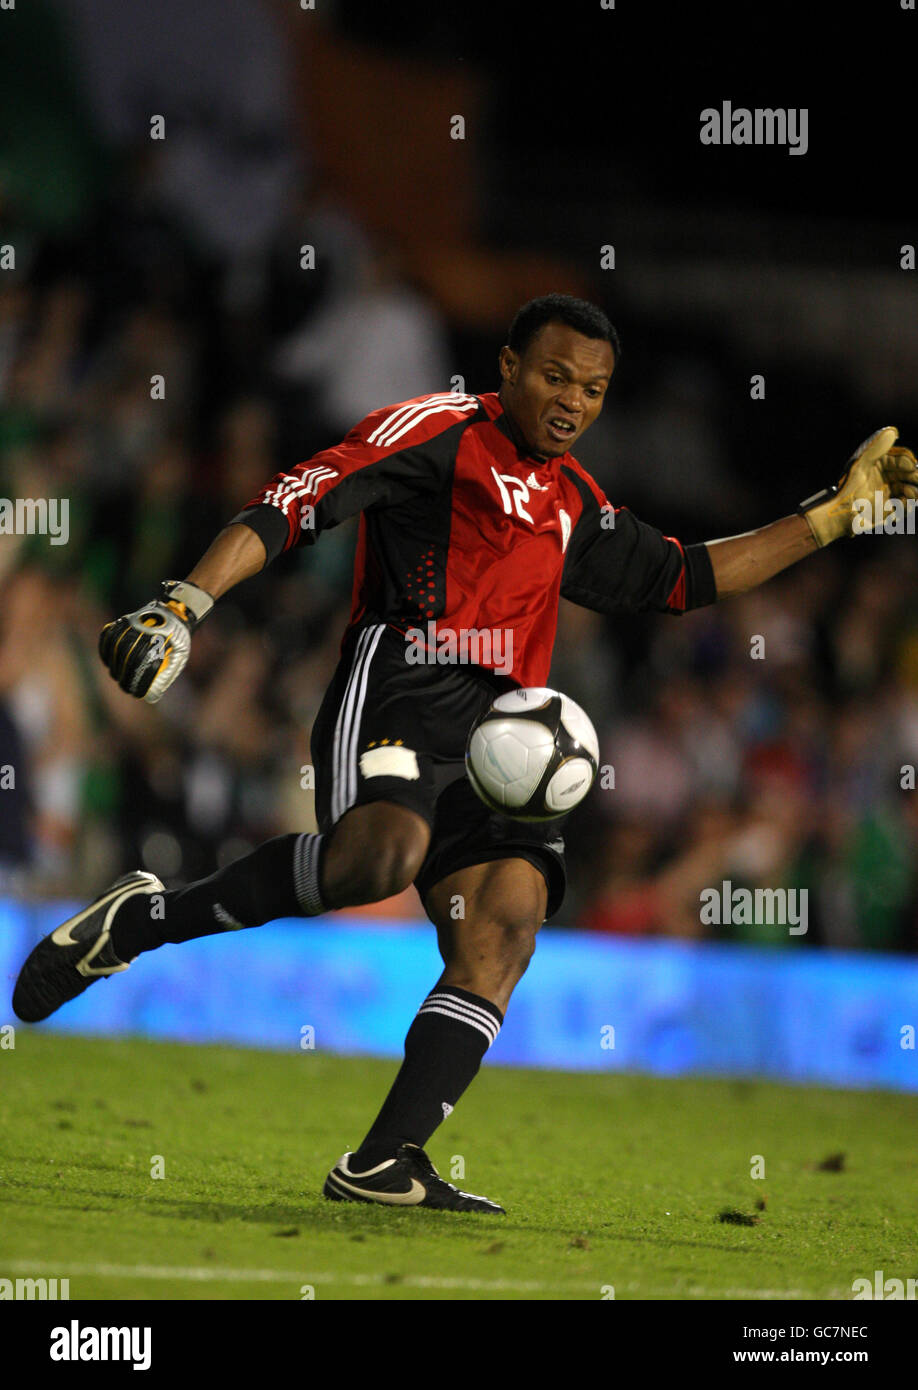 Soccer - International Friendly - Republic of Ireland v Nigeria - Craven Cottage. Austin Amamchukwu Ejide, Nigeria goalkeeper Stock Photo